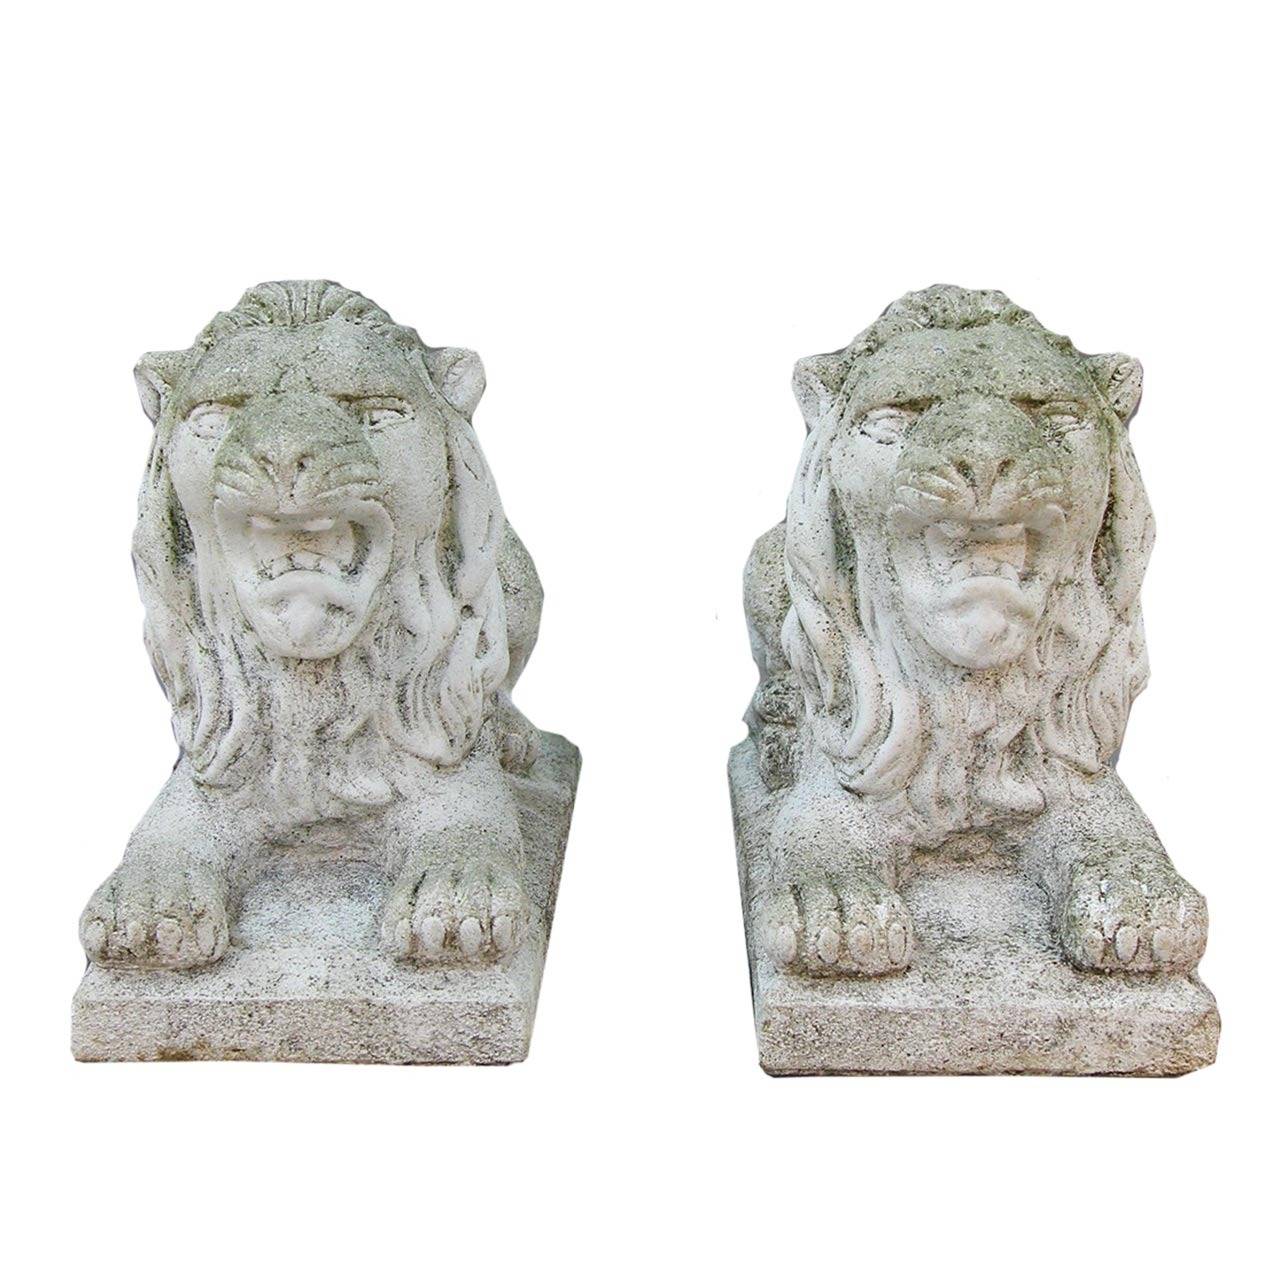 American Imposing Pair of Recumbent Cast Statuary Lions